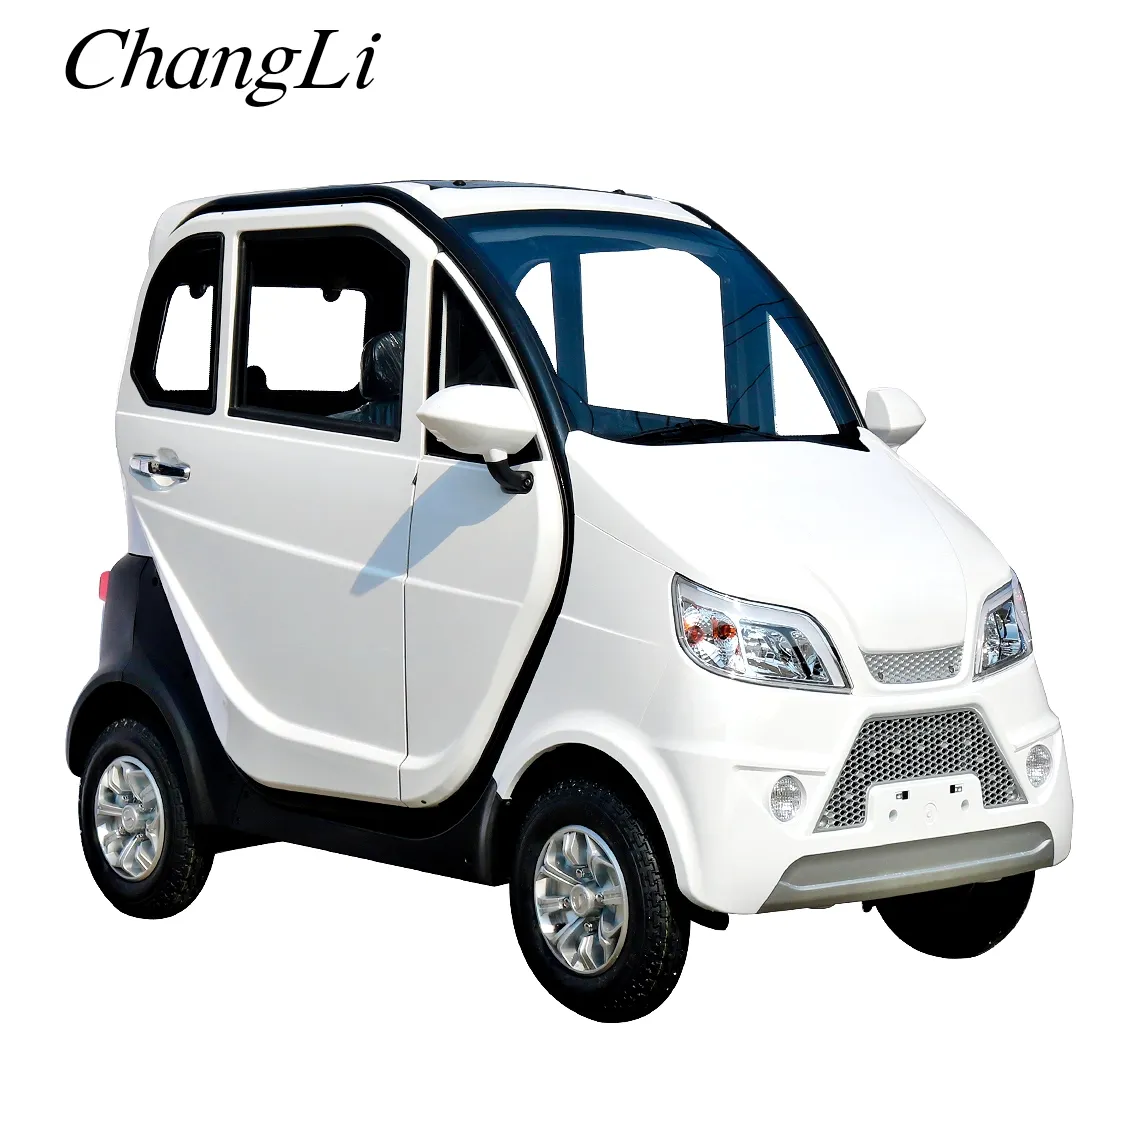 รถสามล้อไฟฟ้า4ล้อขายดีที่สุดโดยเฉพาะสำหรับรถยนต์ไฟฟ้าขนาดเล็กผู้สูงอายุ Changli ใบรับรอง CE